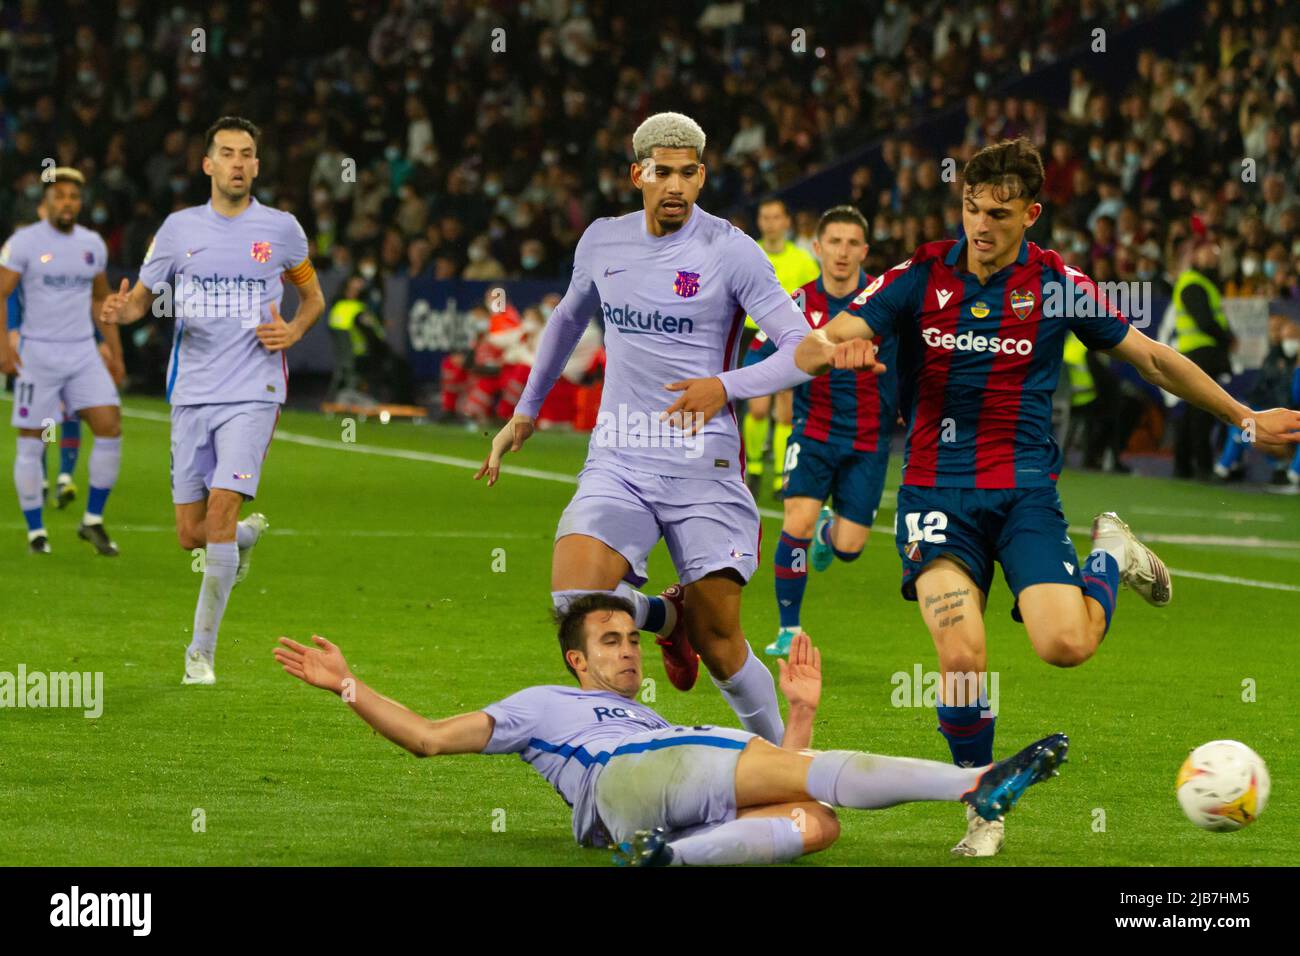 Valencia, (SPANIEN) - 10. April 2022 - F. C. Barcelona-Spieler Eric García macht vor den Spielern Araújo und Marc Pubill einen Ball frei Stockfoto